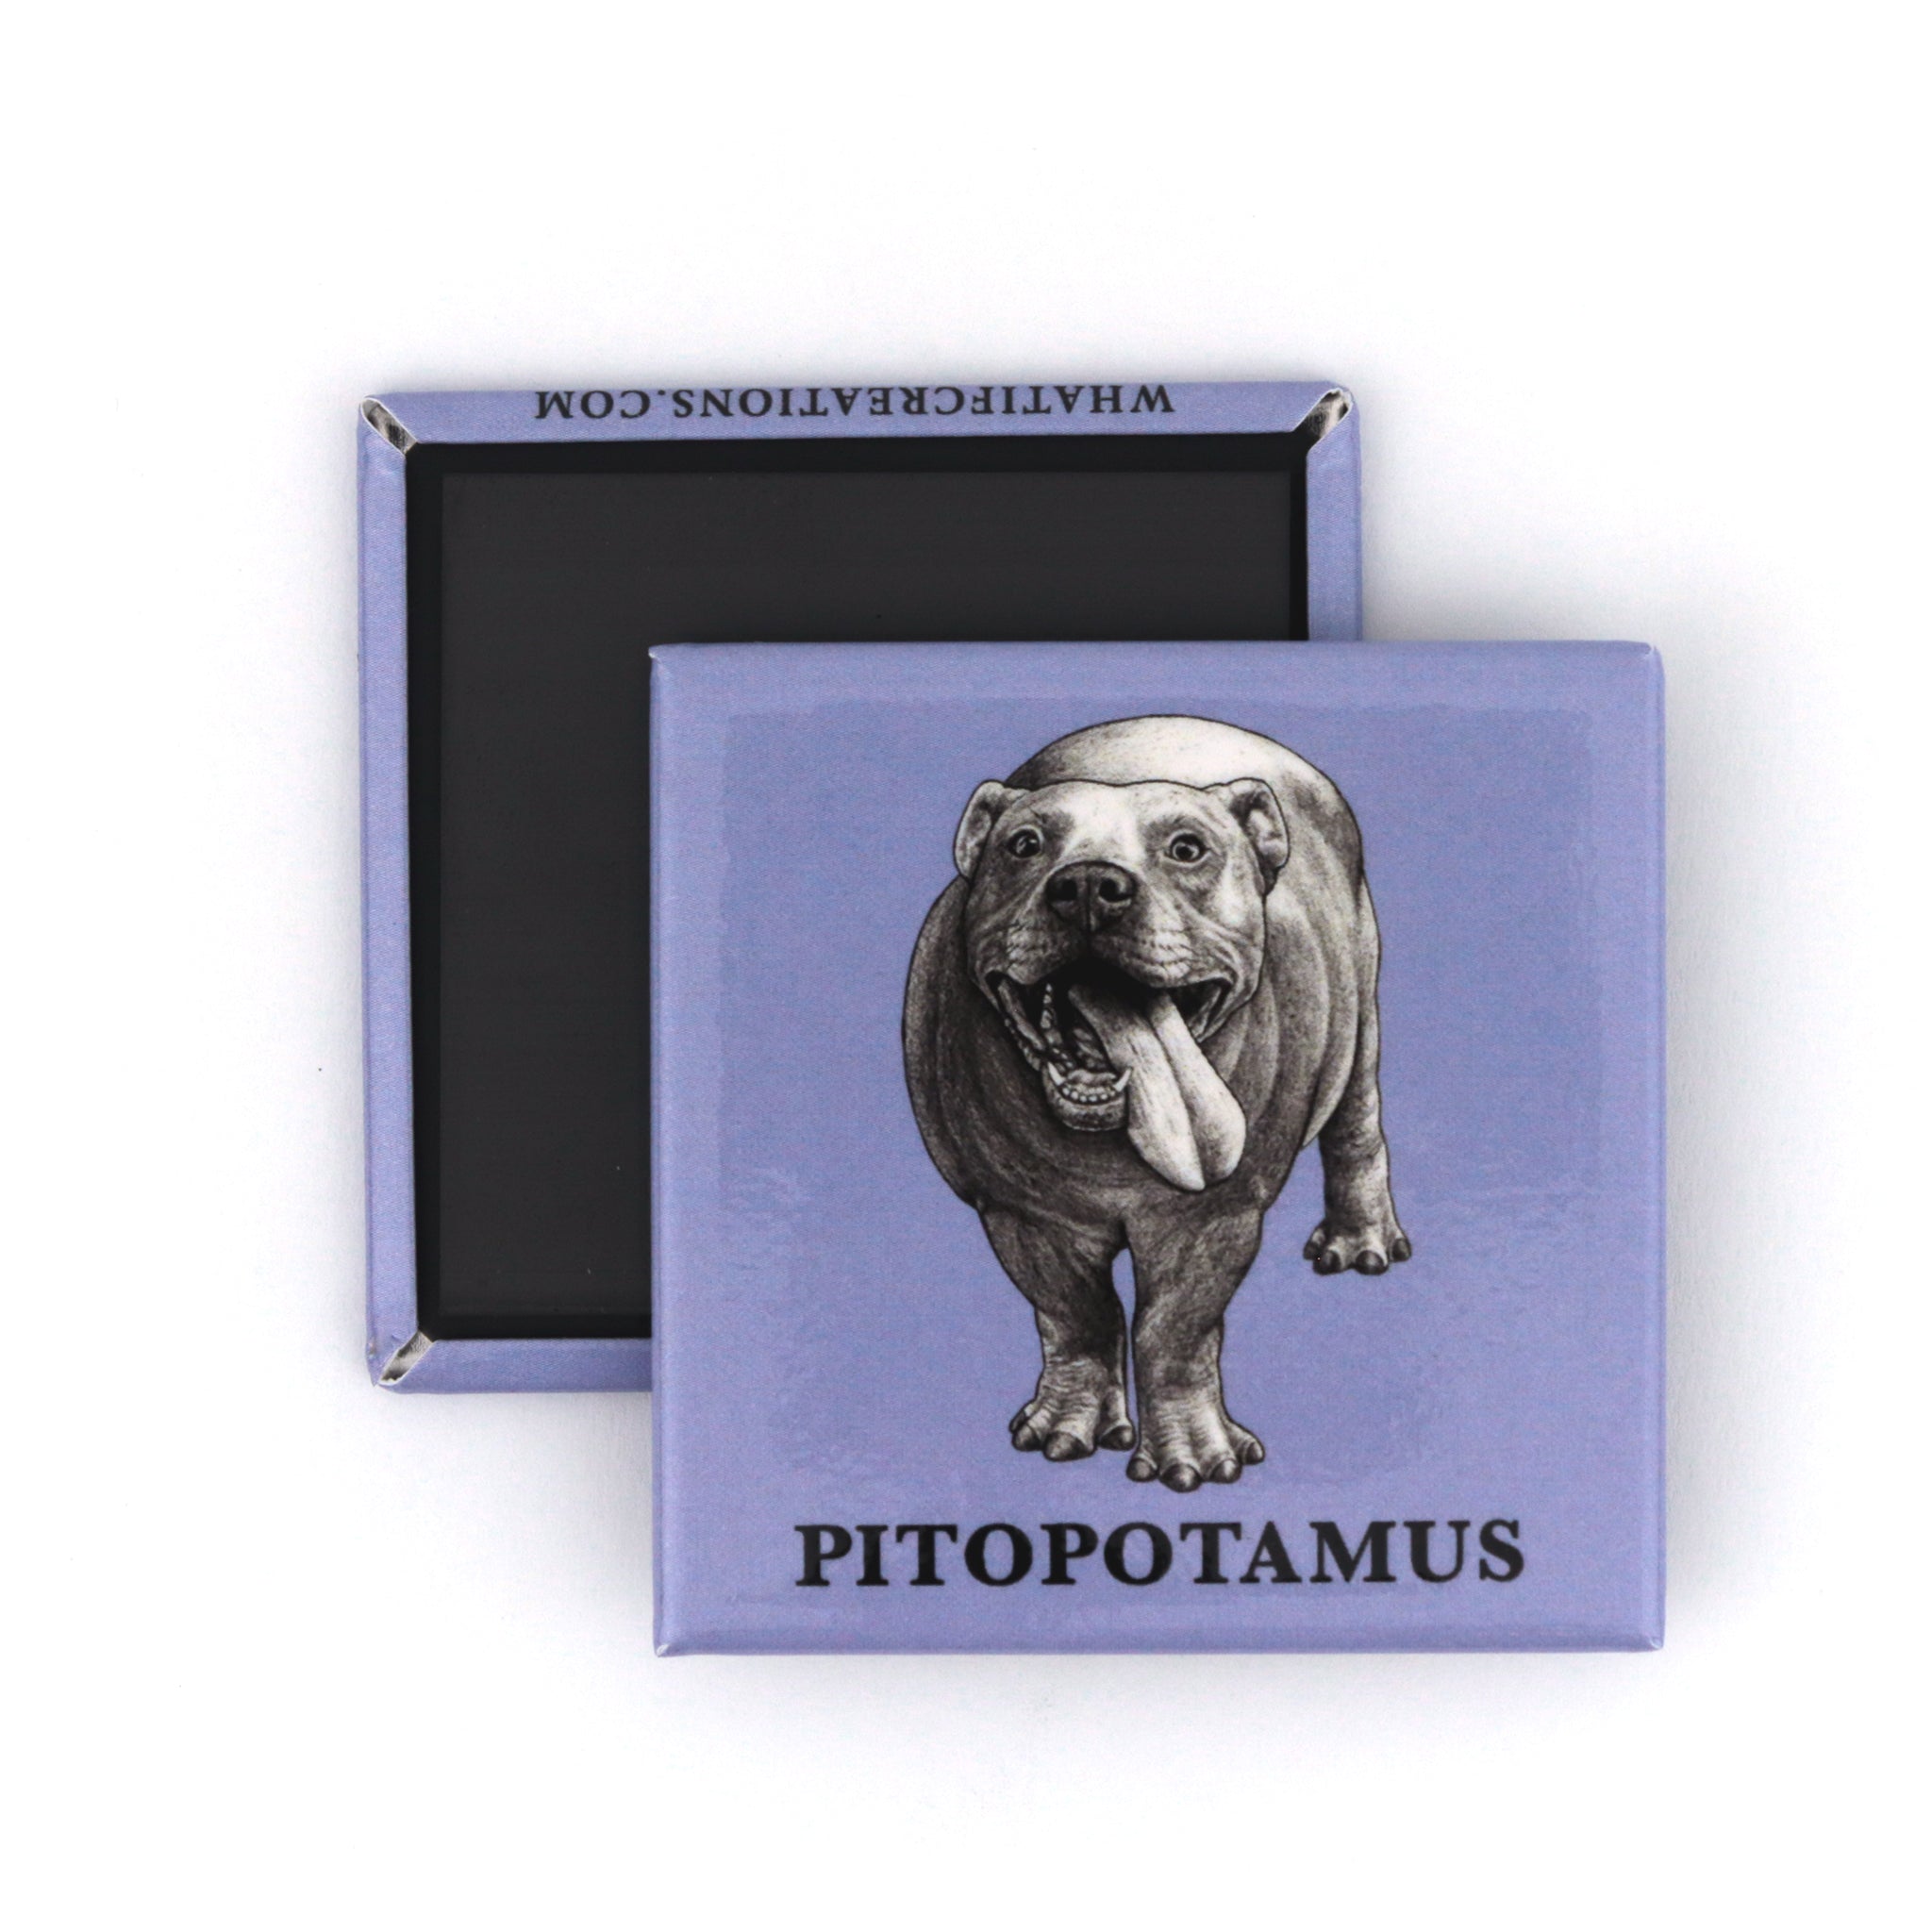 Pitopotamus 2" Fridge Magnet